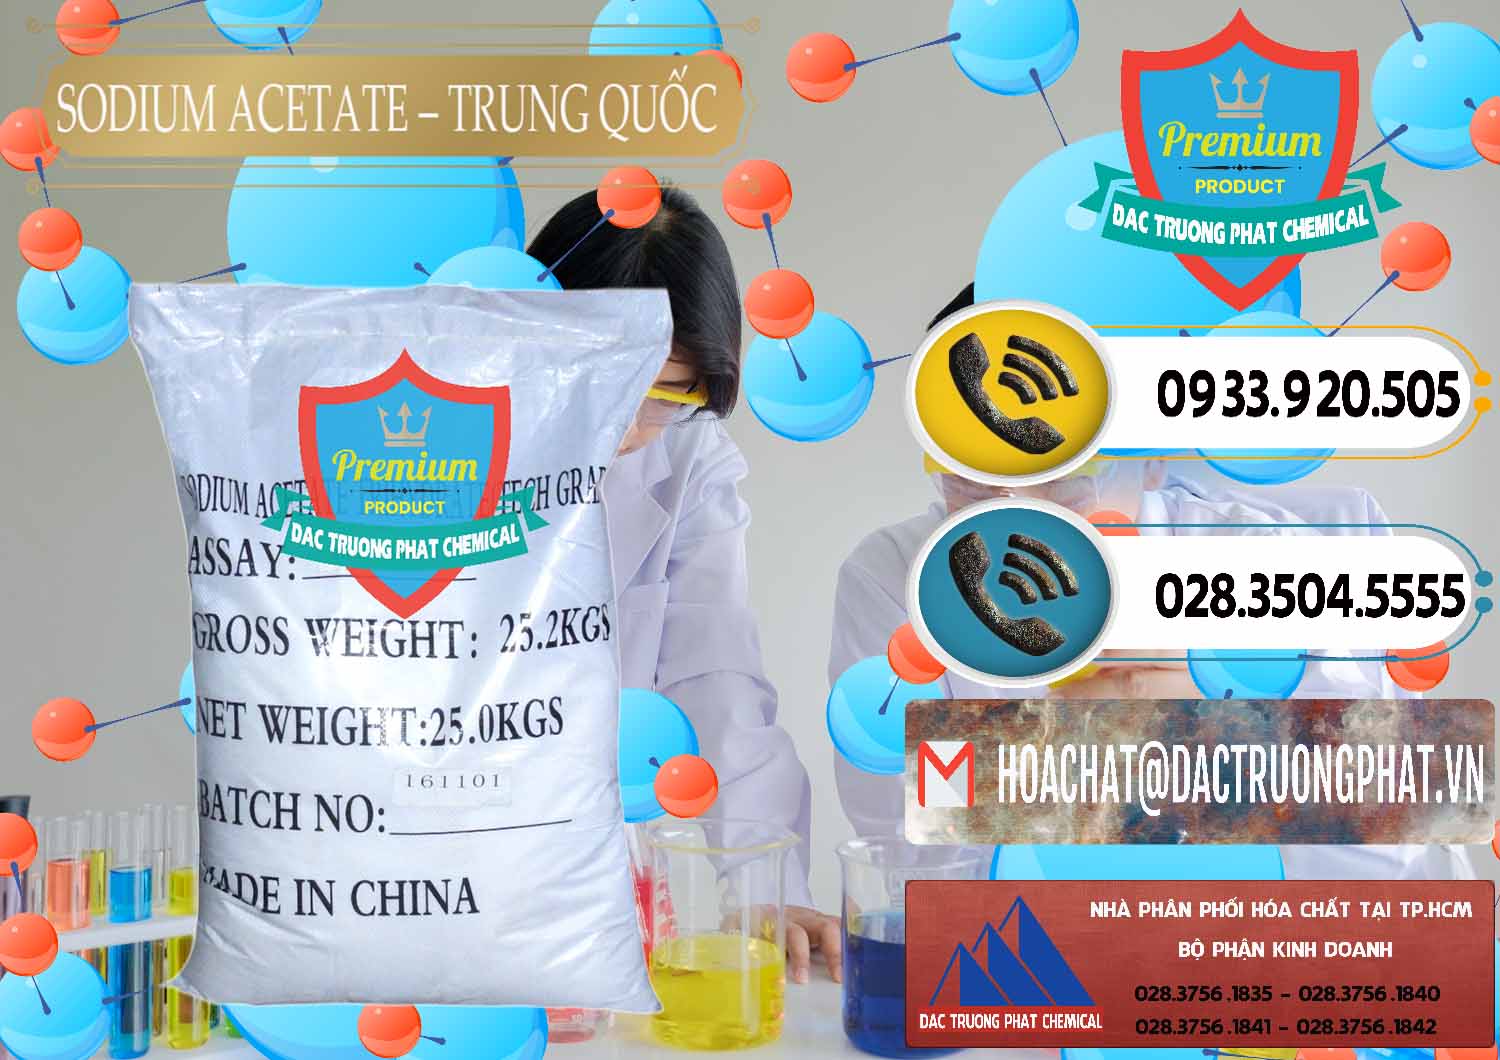 Cung cấp và bán Sodium Acetate - Natri Acetate Trung Quốc China - 0134 - Cung cấp _ bán hóa chất tại TP.HCM - hoachatdetnhuom.vn